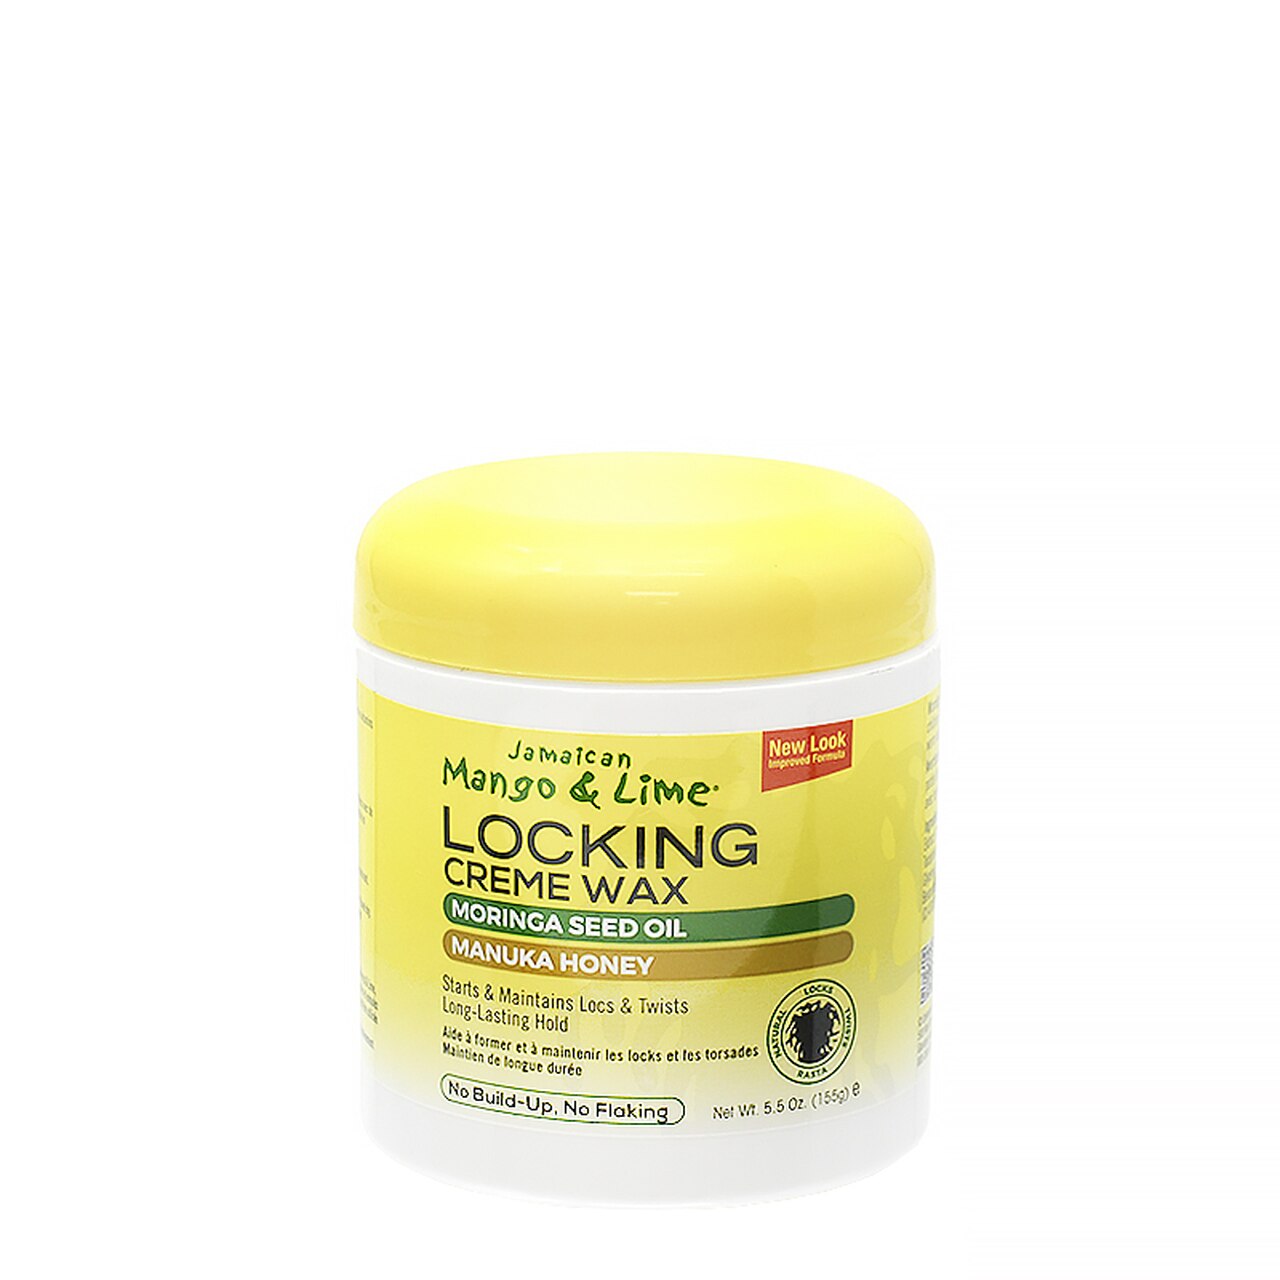 Jamaican Mango & Lime- Locking Creme Wax